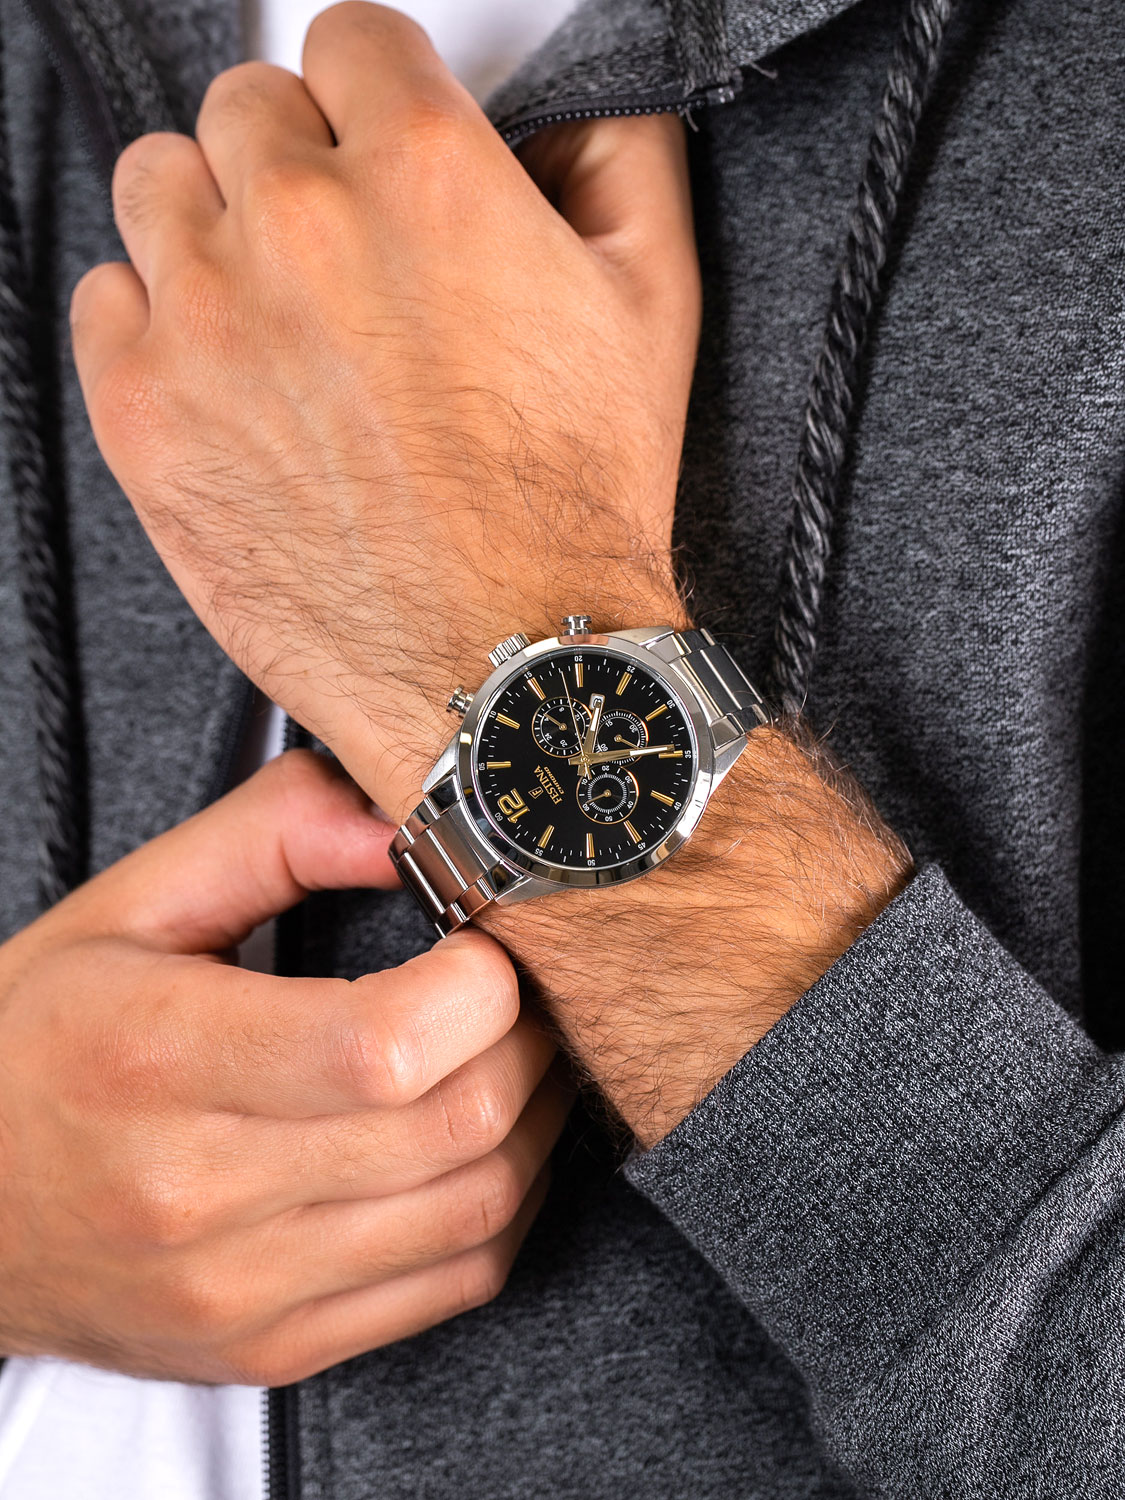 Наручные часы Festina F20343/4 — купить в интернет-магазине AllTime.ru по  лучшей цене, фото, характеристики, описание